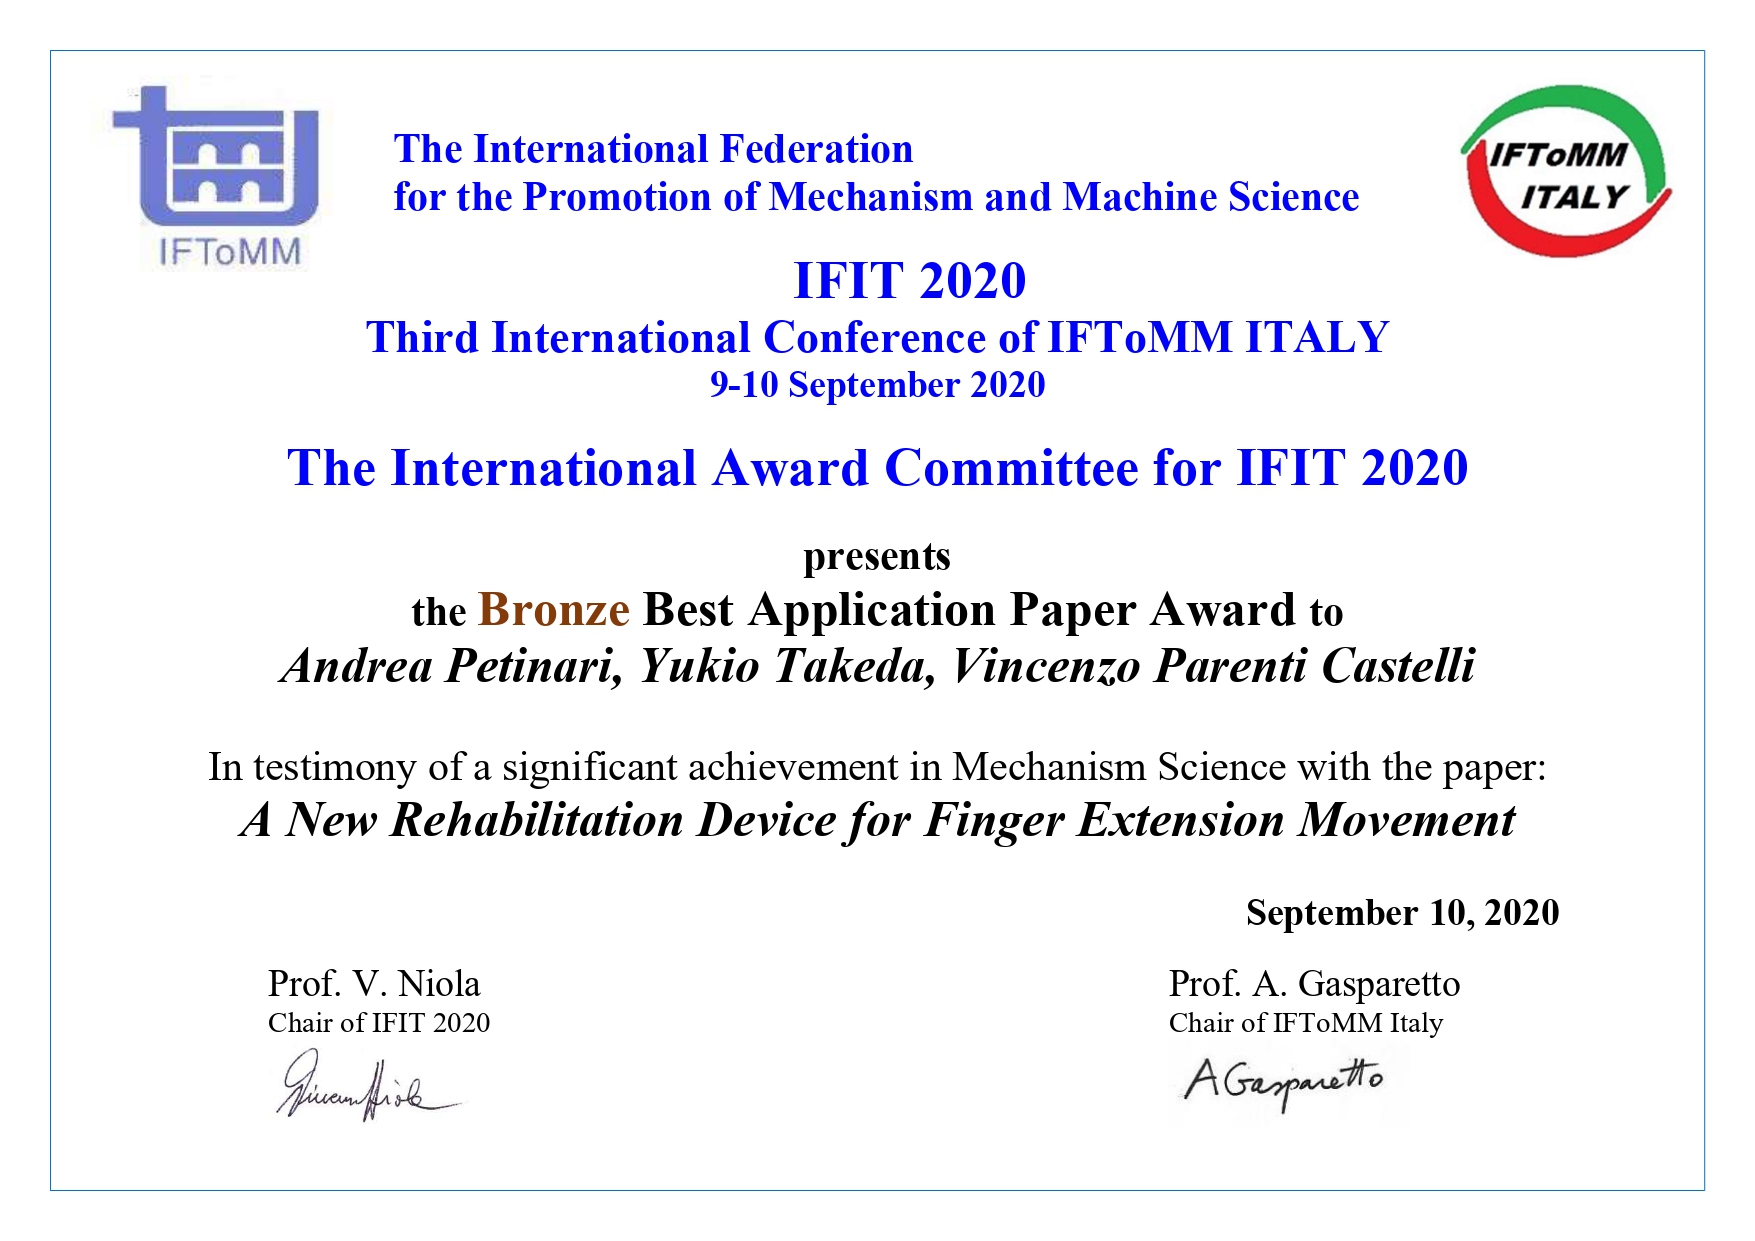 Prof. Yukio Takeda won the Bronze Best Application Paper Award at IFIT2020